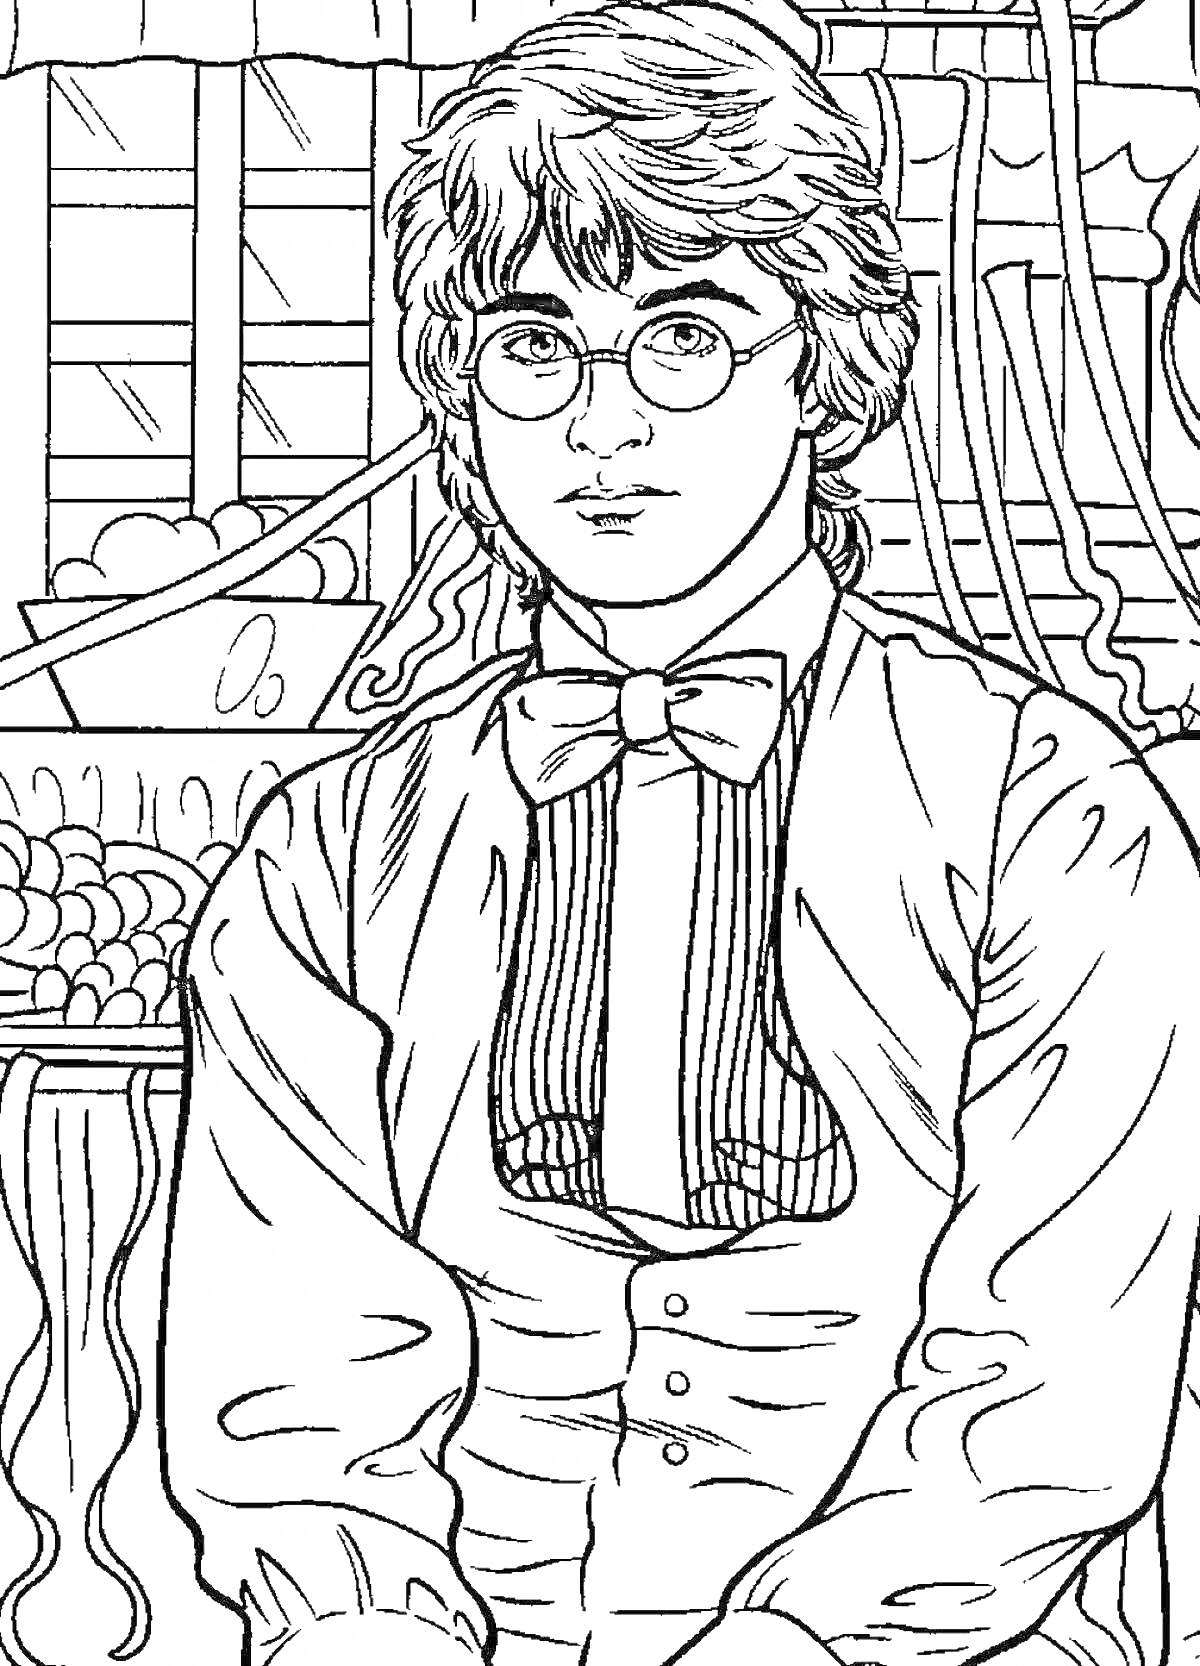 Гарри Поттер в очках с бабочкой на фоне магазина со сладостями